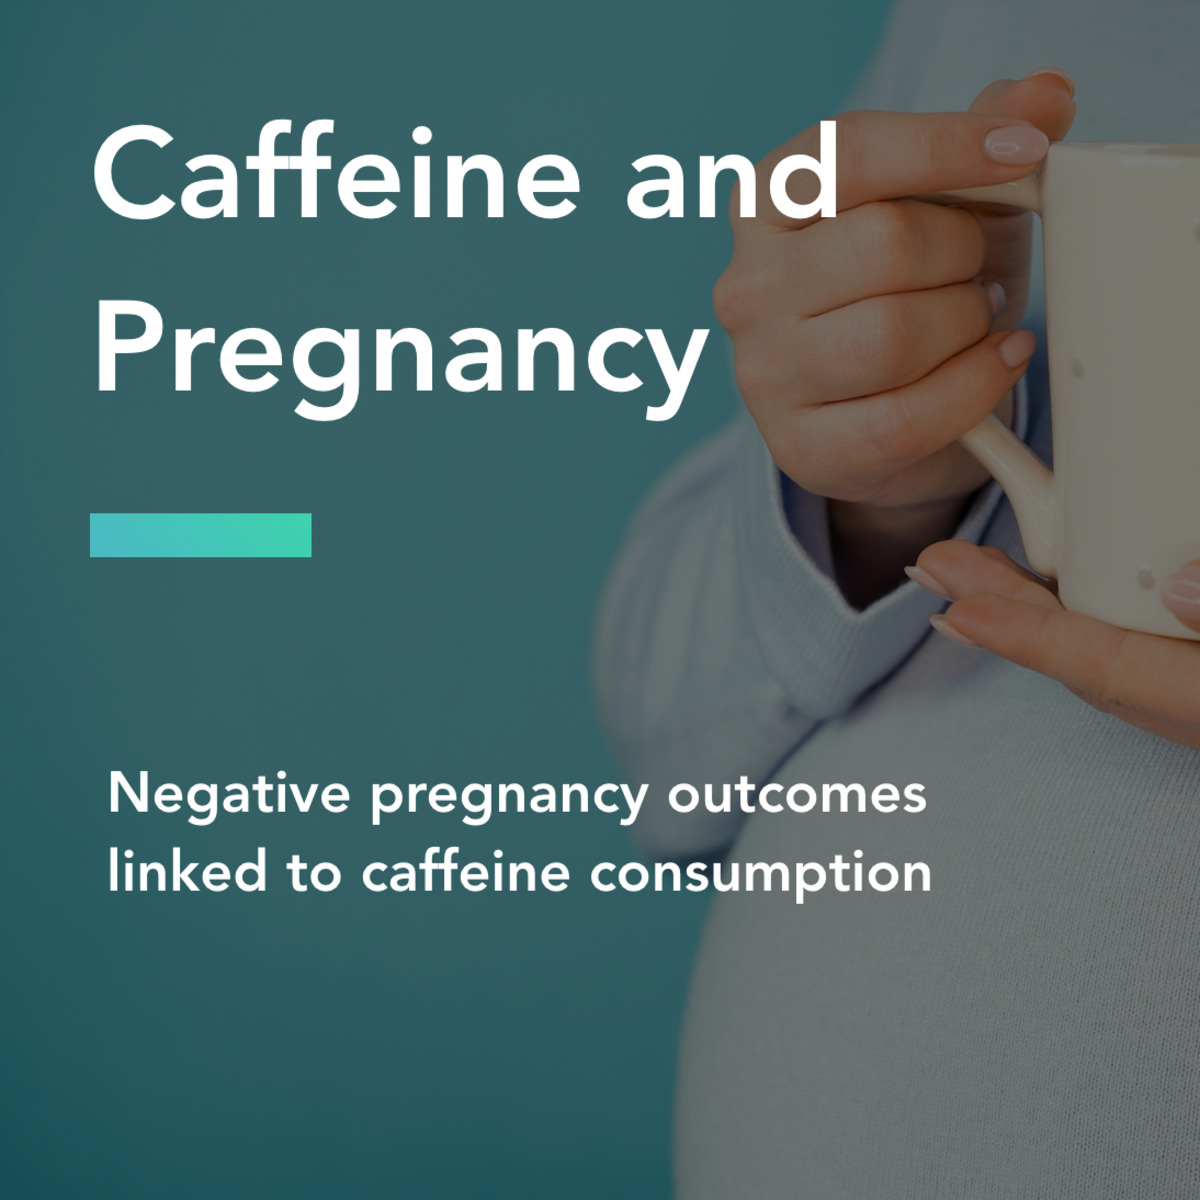 Caffeine: That Pregnancy Tug-of-War